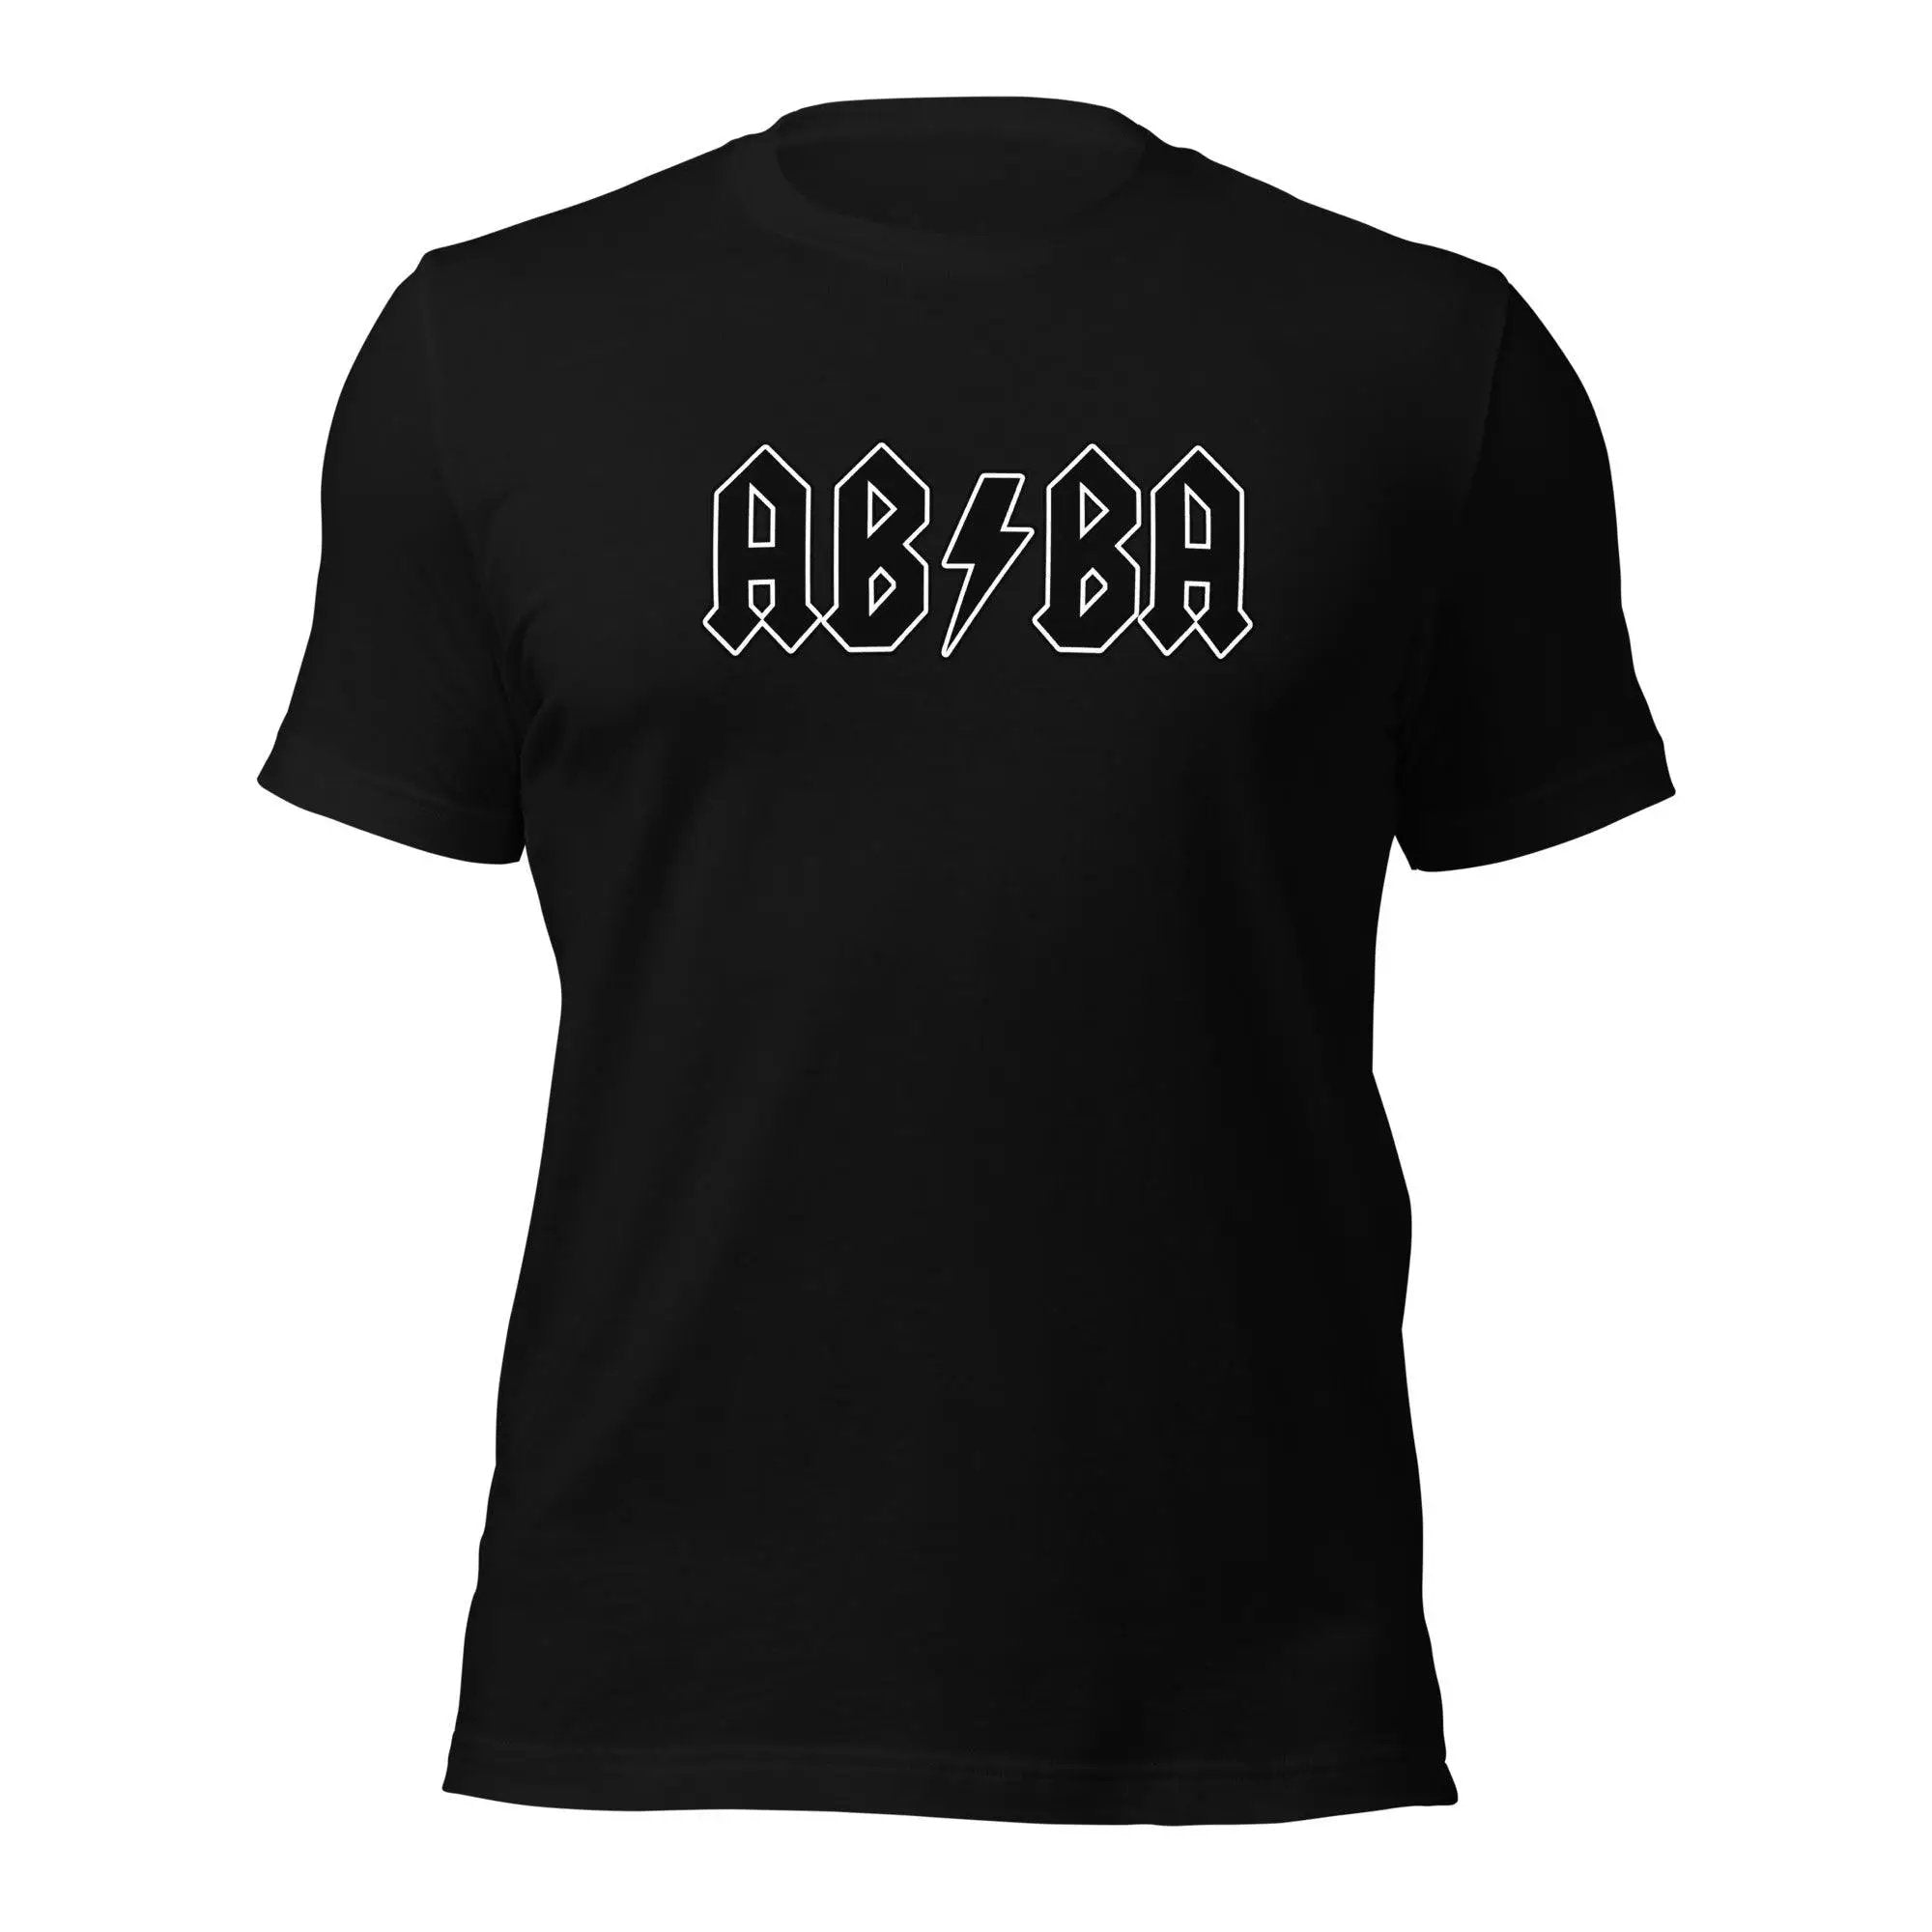 AB/BA Unisex t-shirt